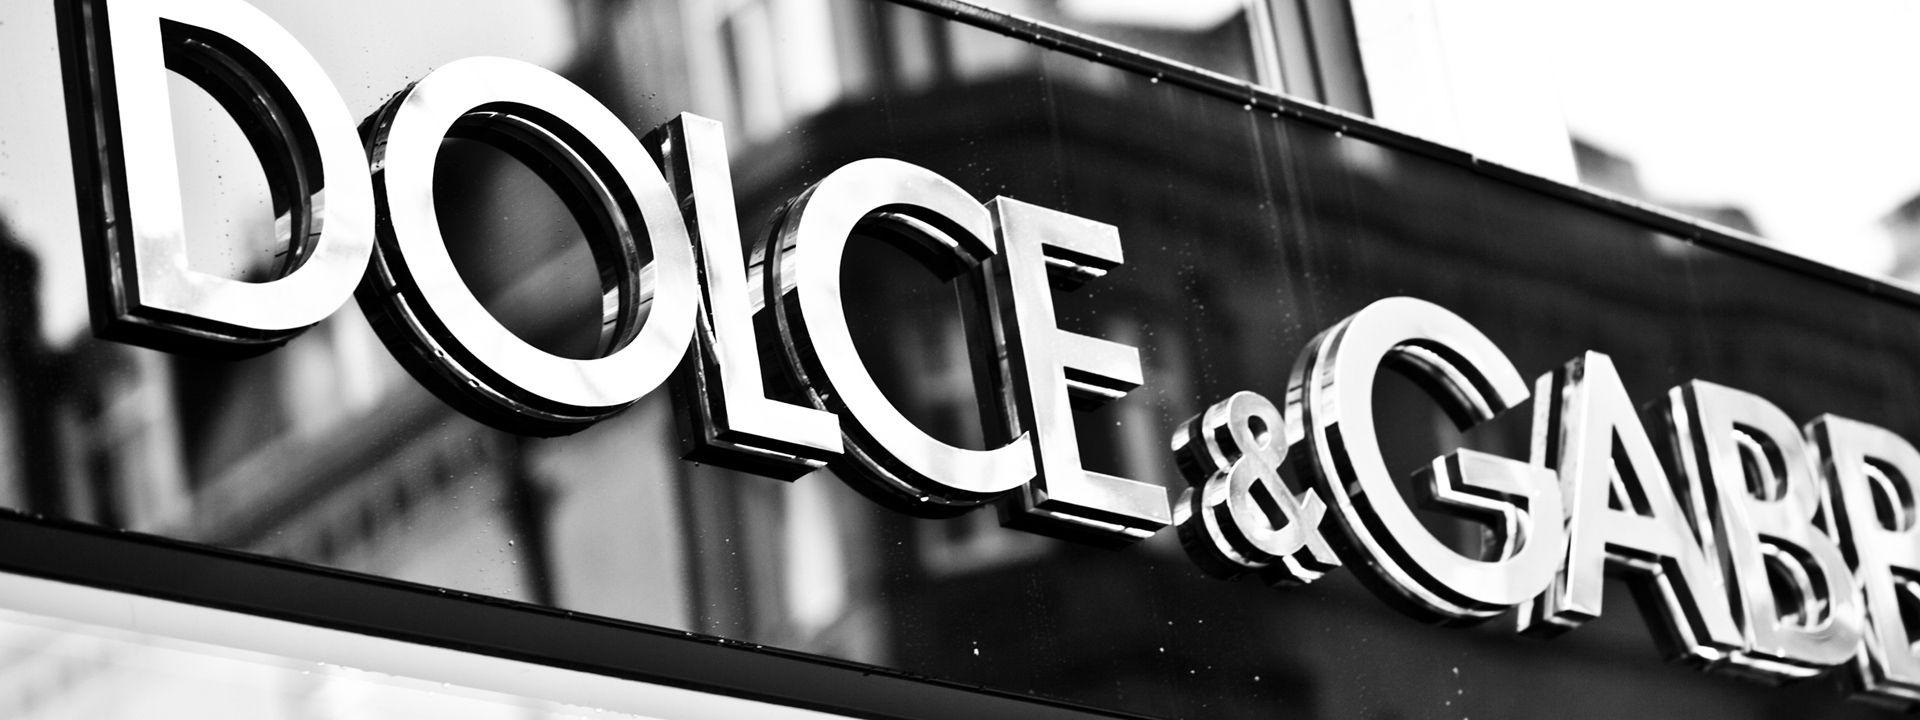 Dolce and Gabbana Logo - Dolce & Gabbana Store, Sloane Street, London | Sloane Street